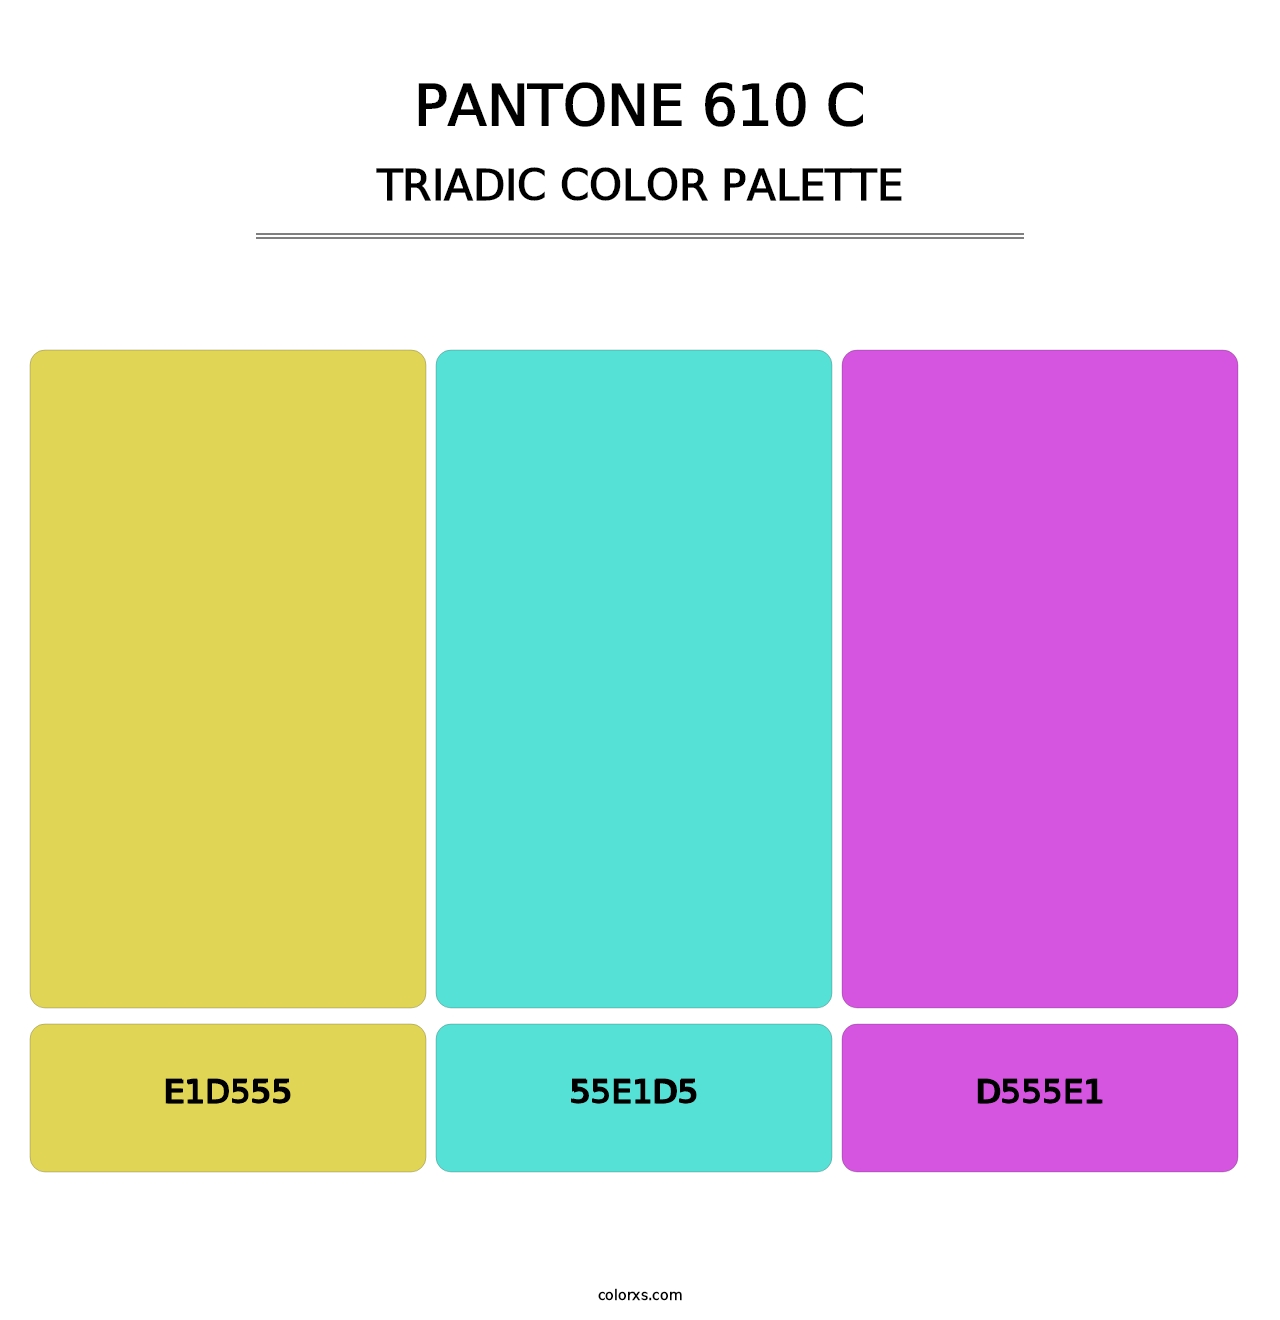 PANTONE 610 C - Triadic Color Palette